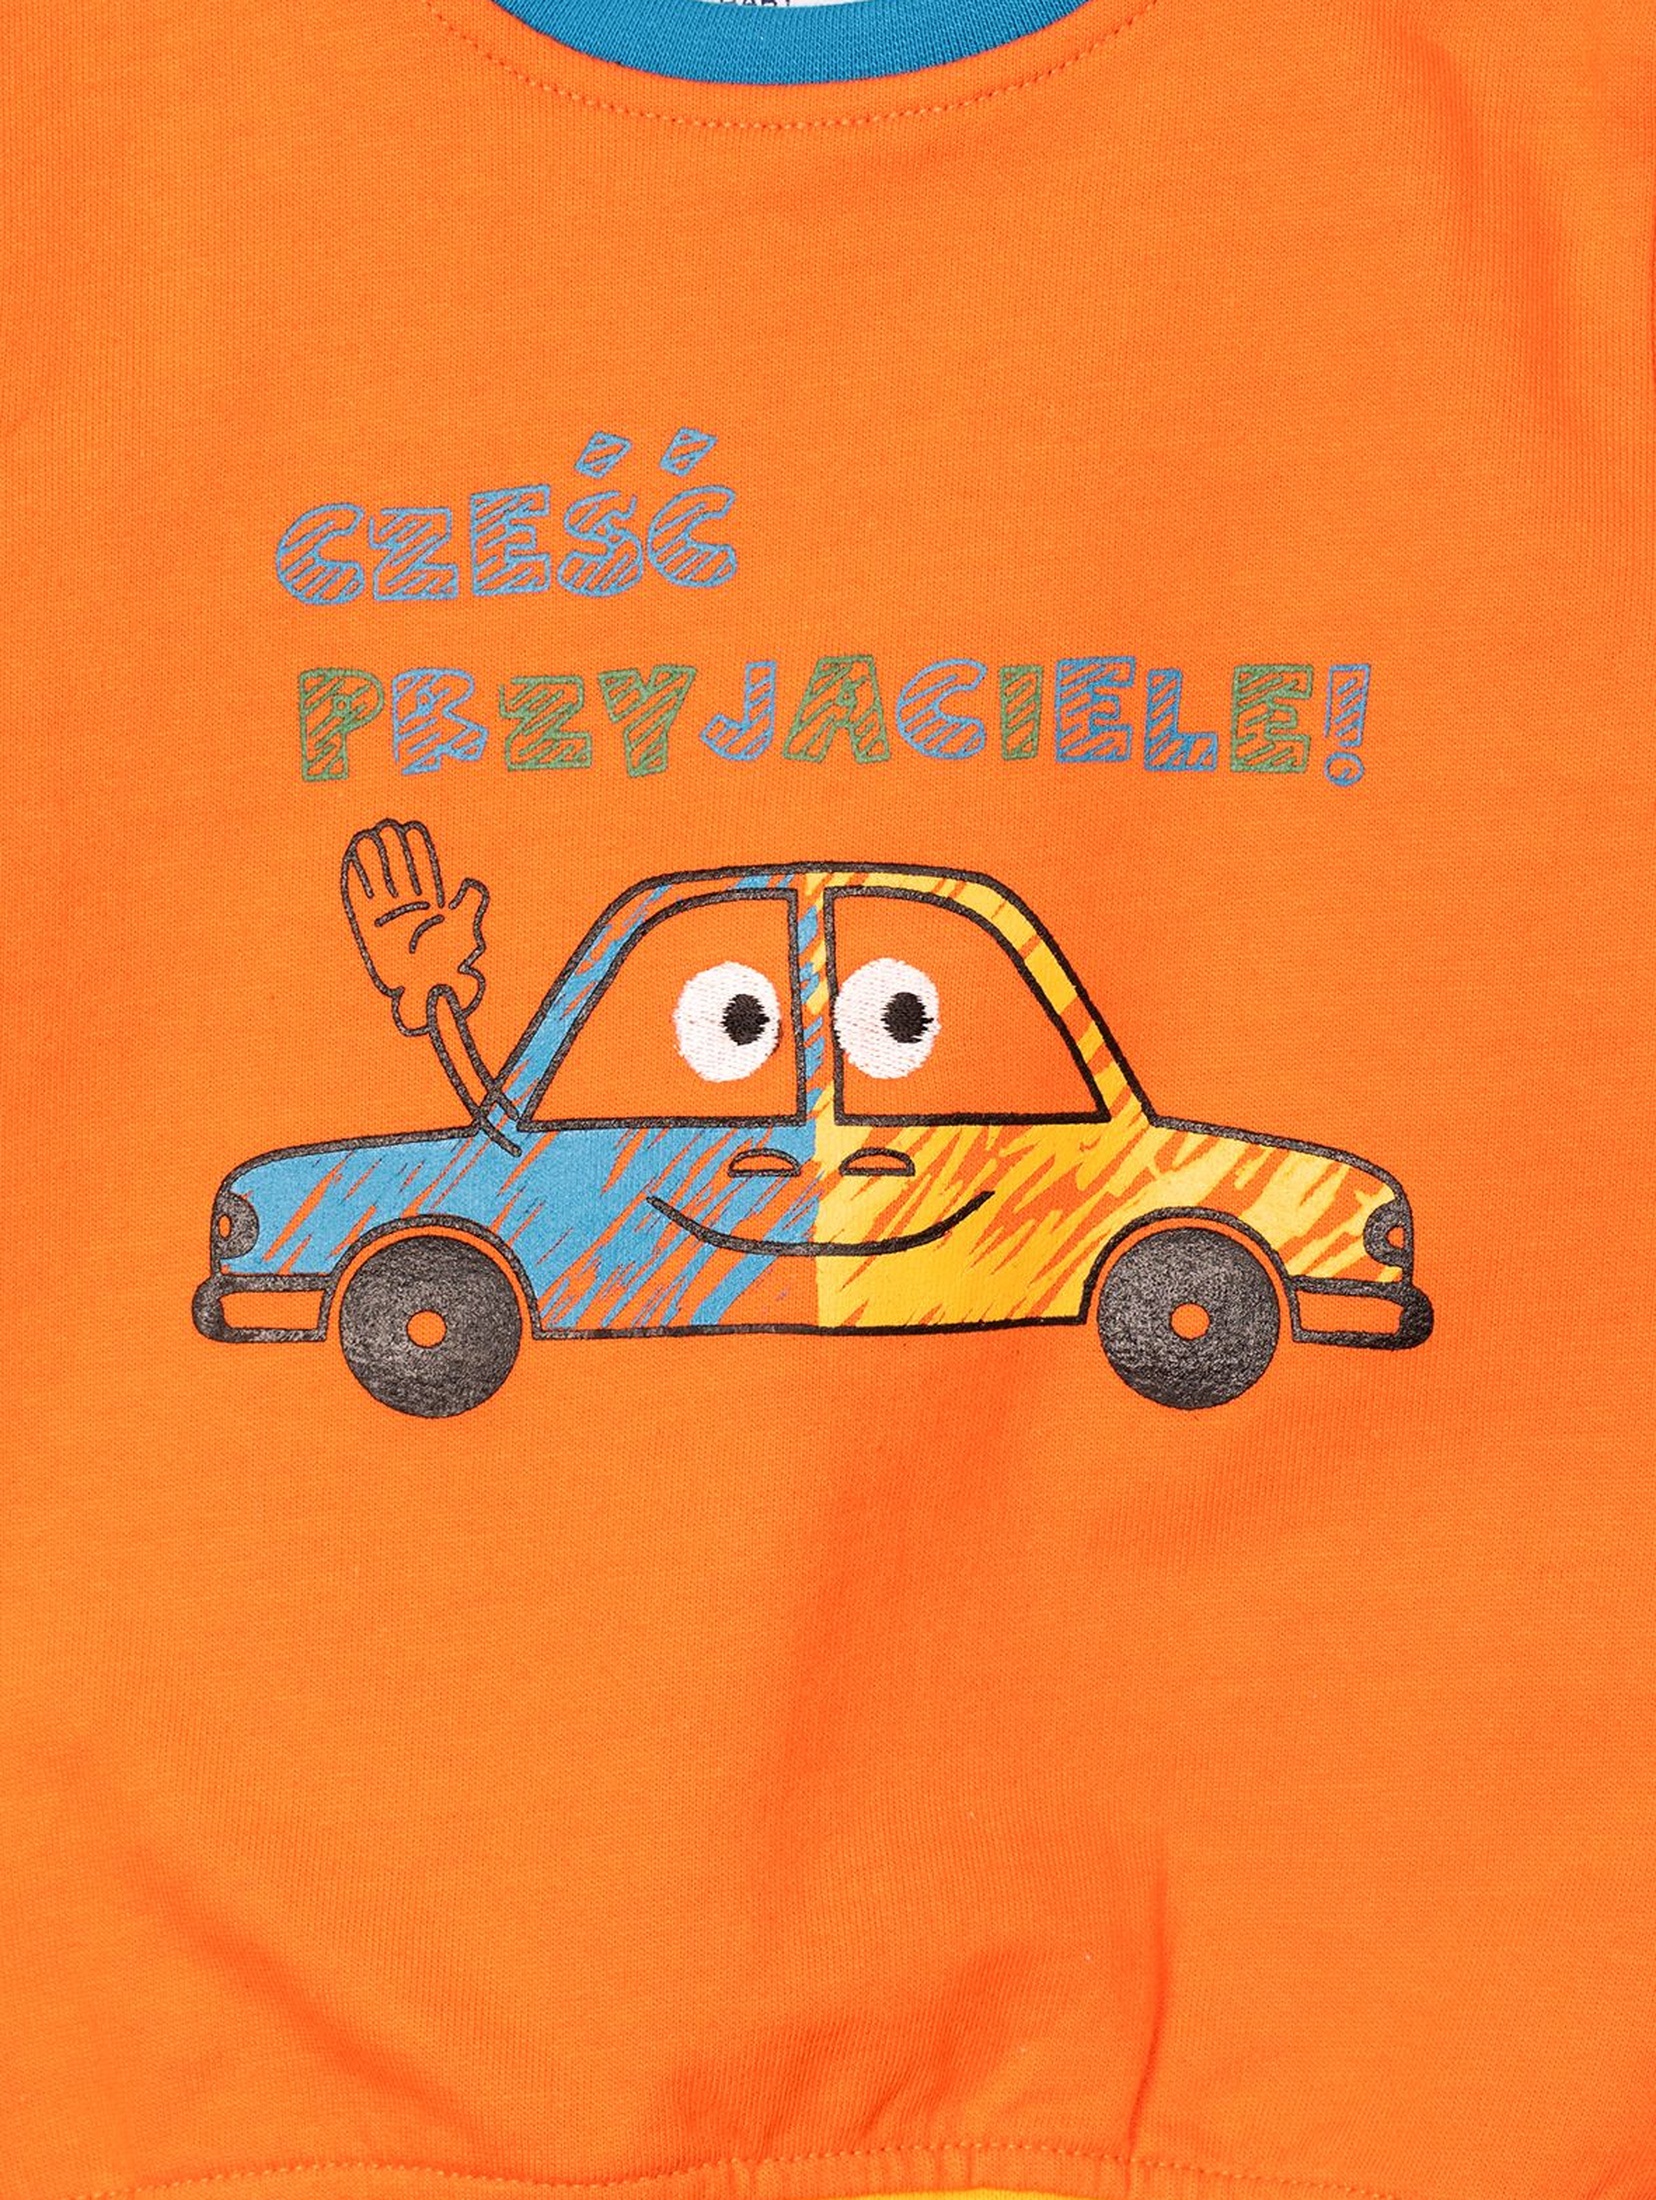 Bluza niemowlęca pomarańczowa z samochodzikiem